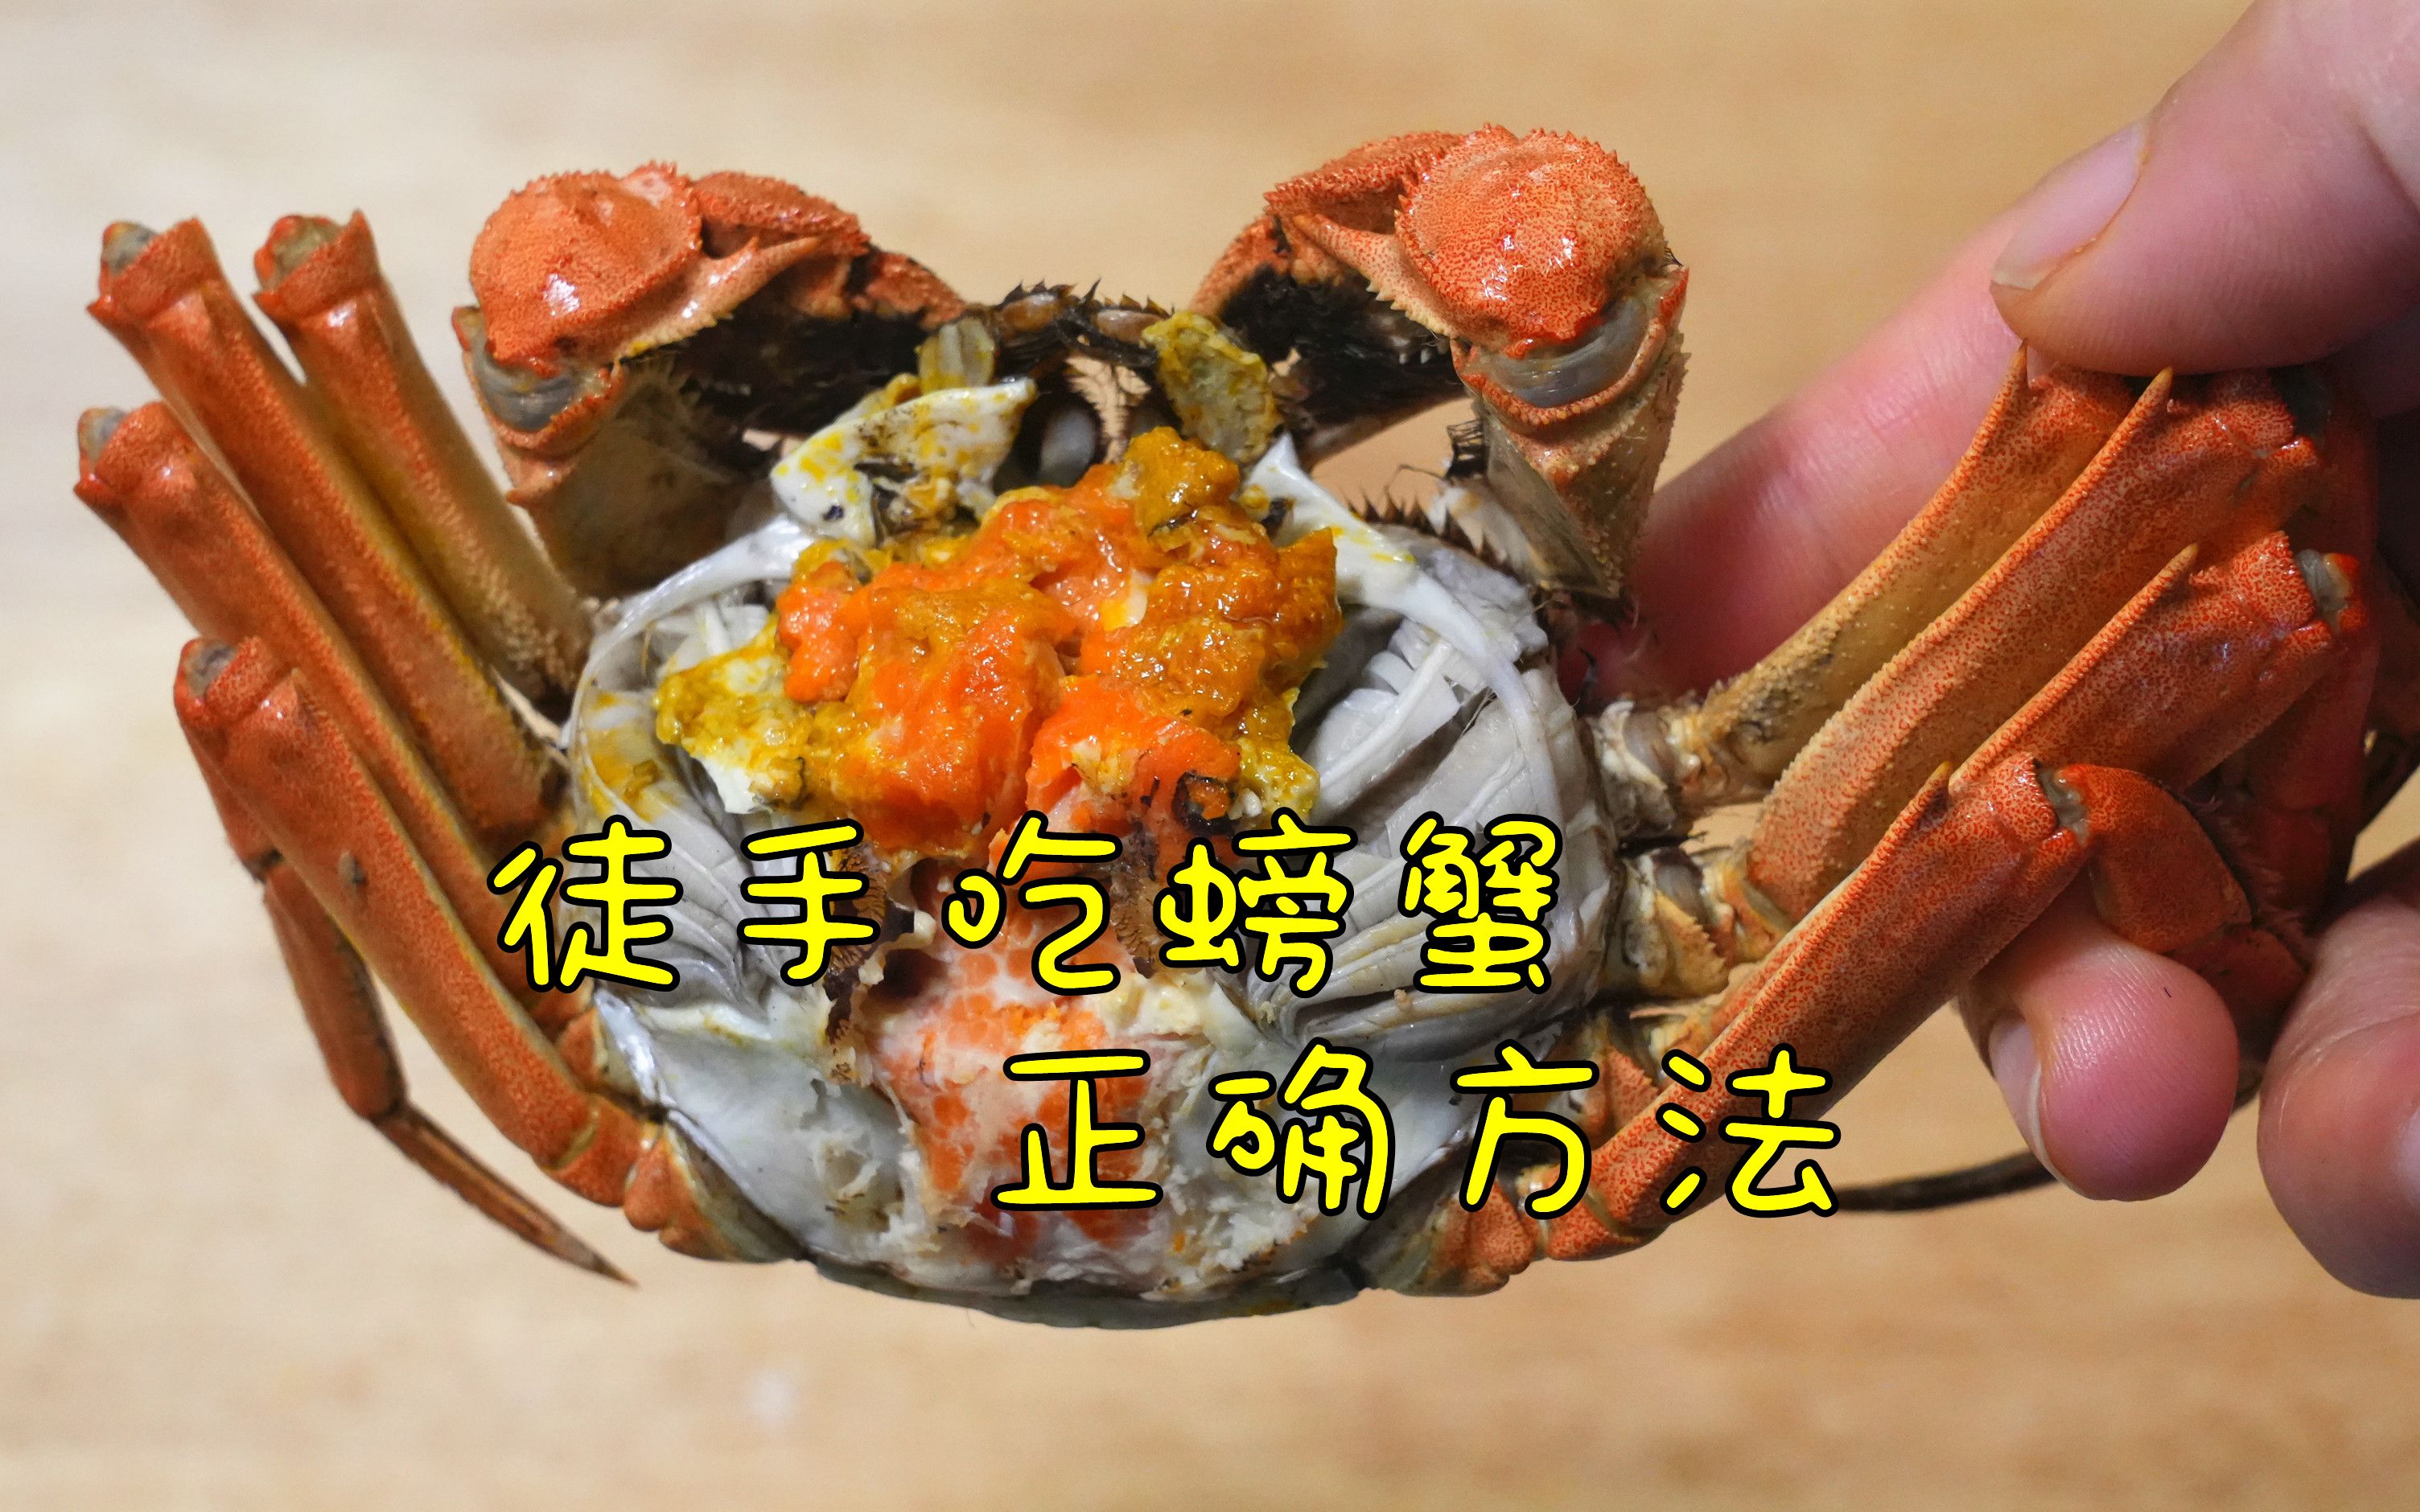 教你徒手吃螃蟹的正确方法